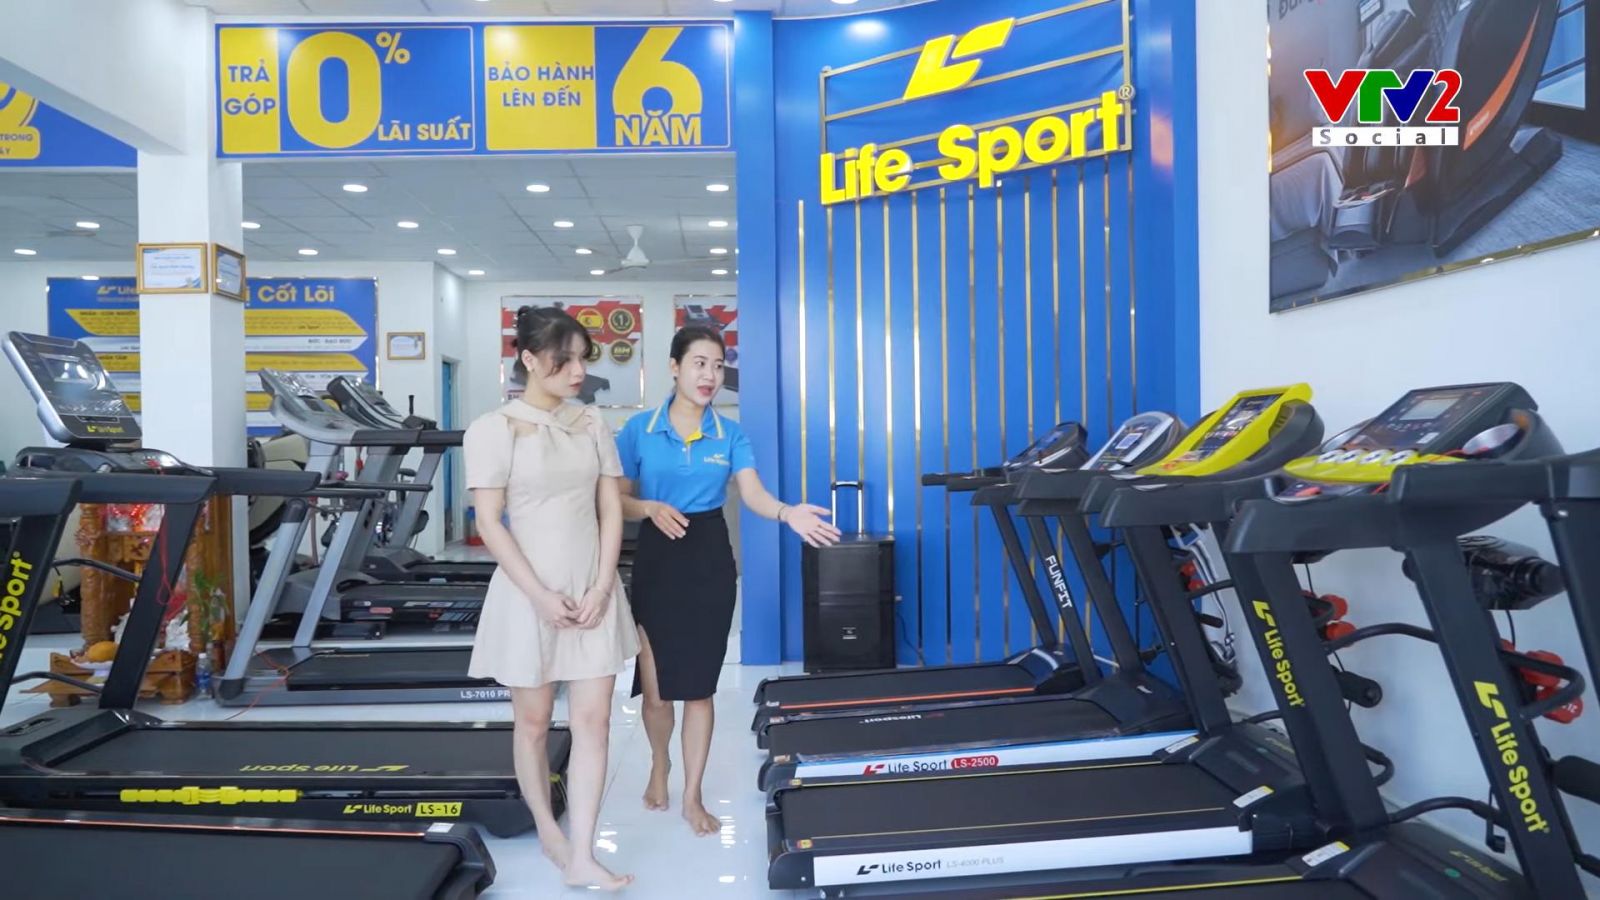 Địa chỉ mua máy chạy bộ tại Lâm Đồng dưới 20 triệu